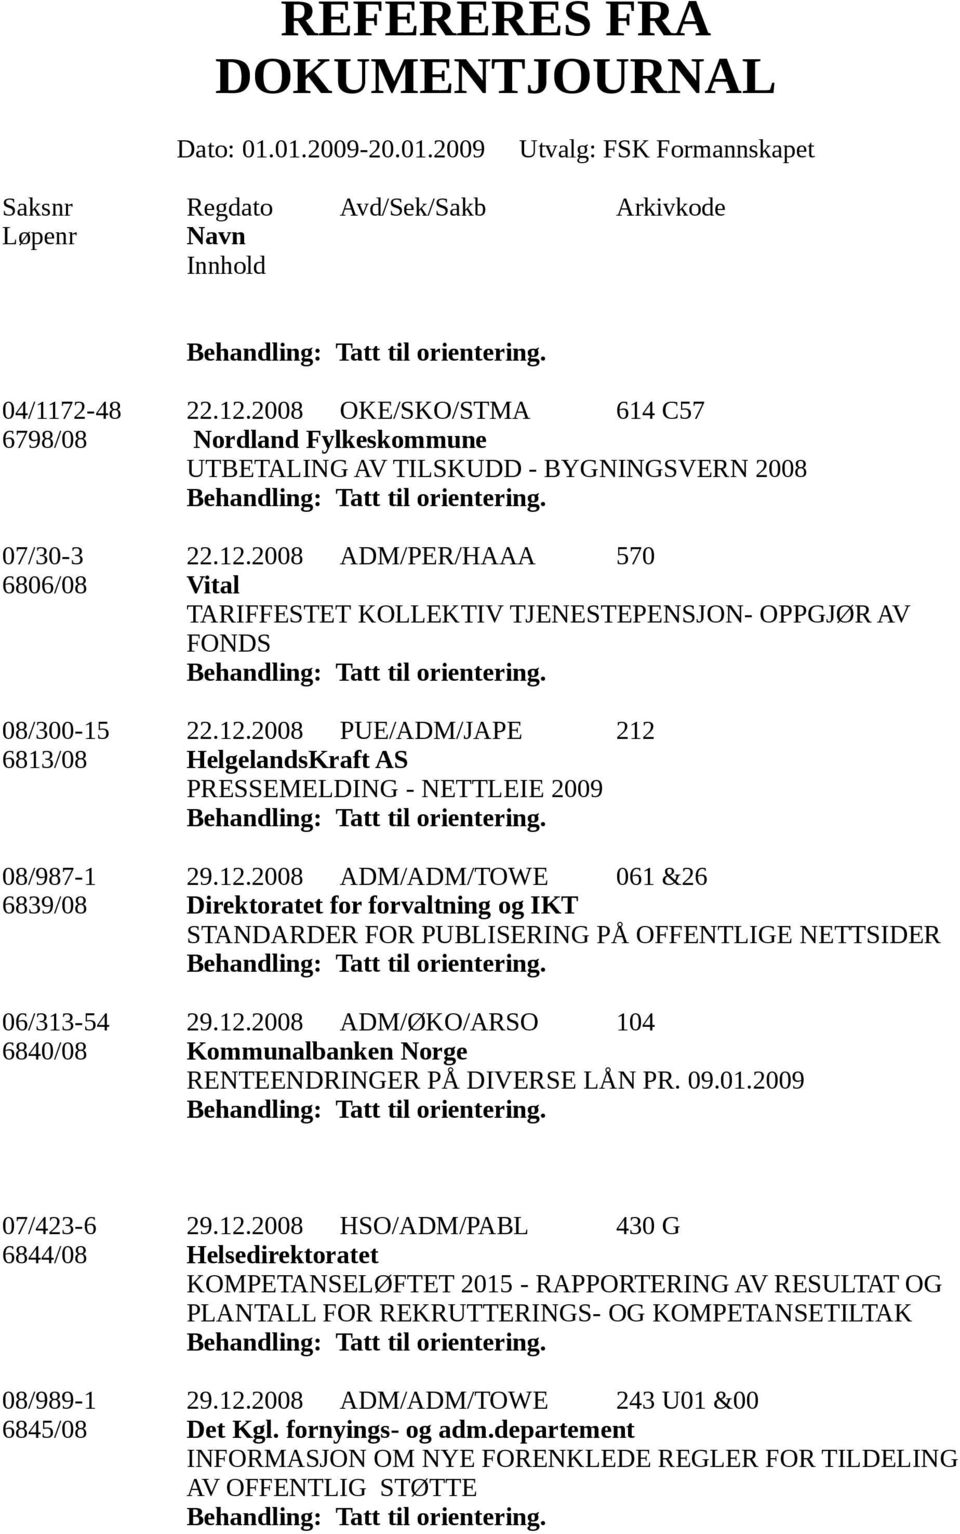 12.2008 ADM/ØKO/ARSO 104 6840/08 Kommunalbanken Norge RENTEENDRINGER PÅ DIVERSE LÅN PR. 09.01.2009 07/423-6 29.12.2008 HSO/ADM/PABL 430 G 6844/08 Helsedirektoratet KOMPETANSELØFTET 2015 - RAPPORTERING AV RESULTAT OG PLANTALL FOR REKRUTTERINGS- OG KOMPETANSETILTAK 08/989-1 29.